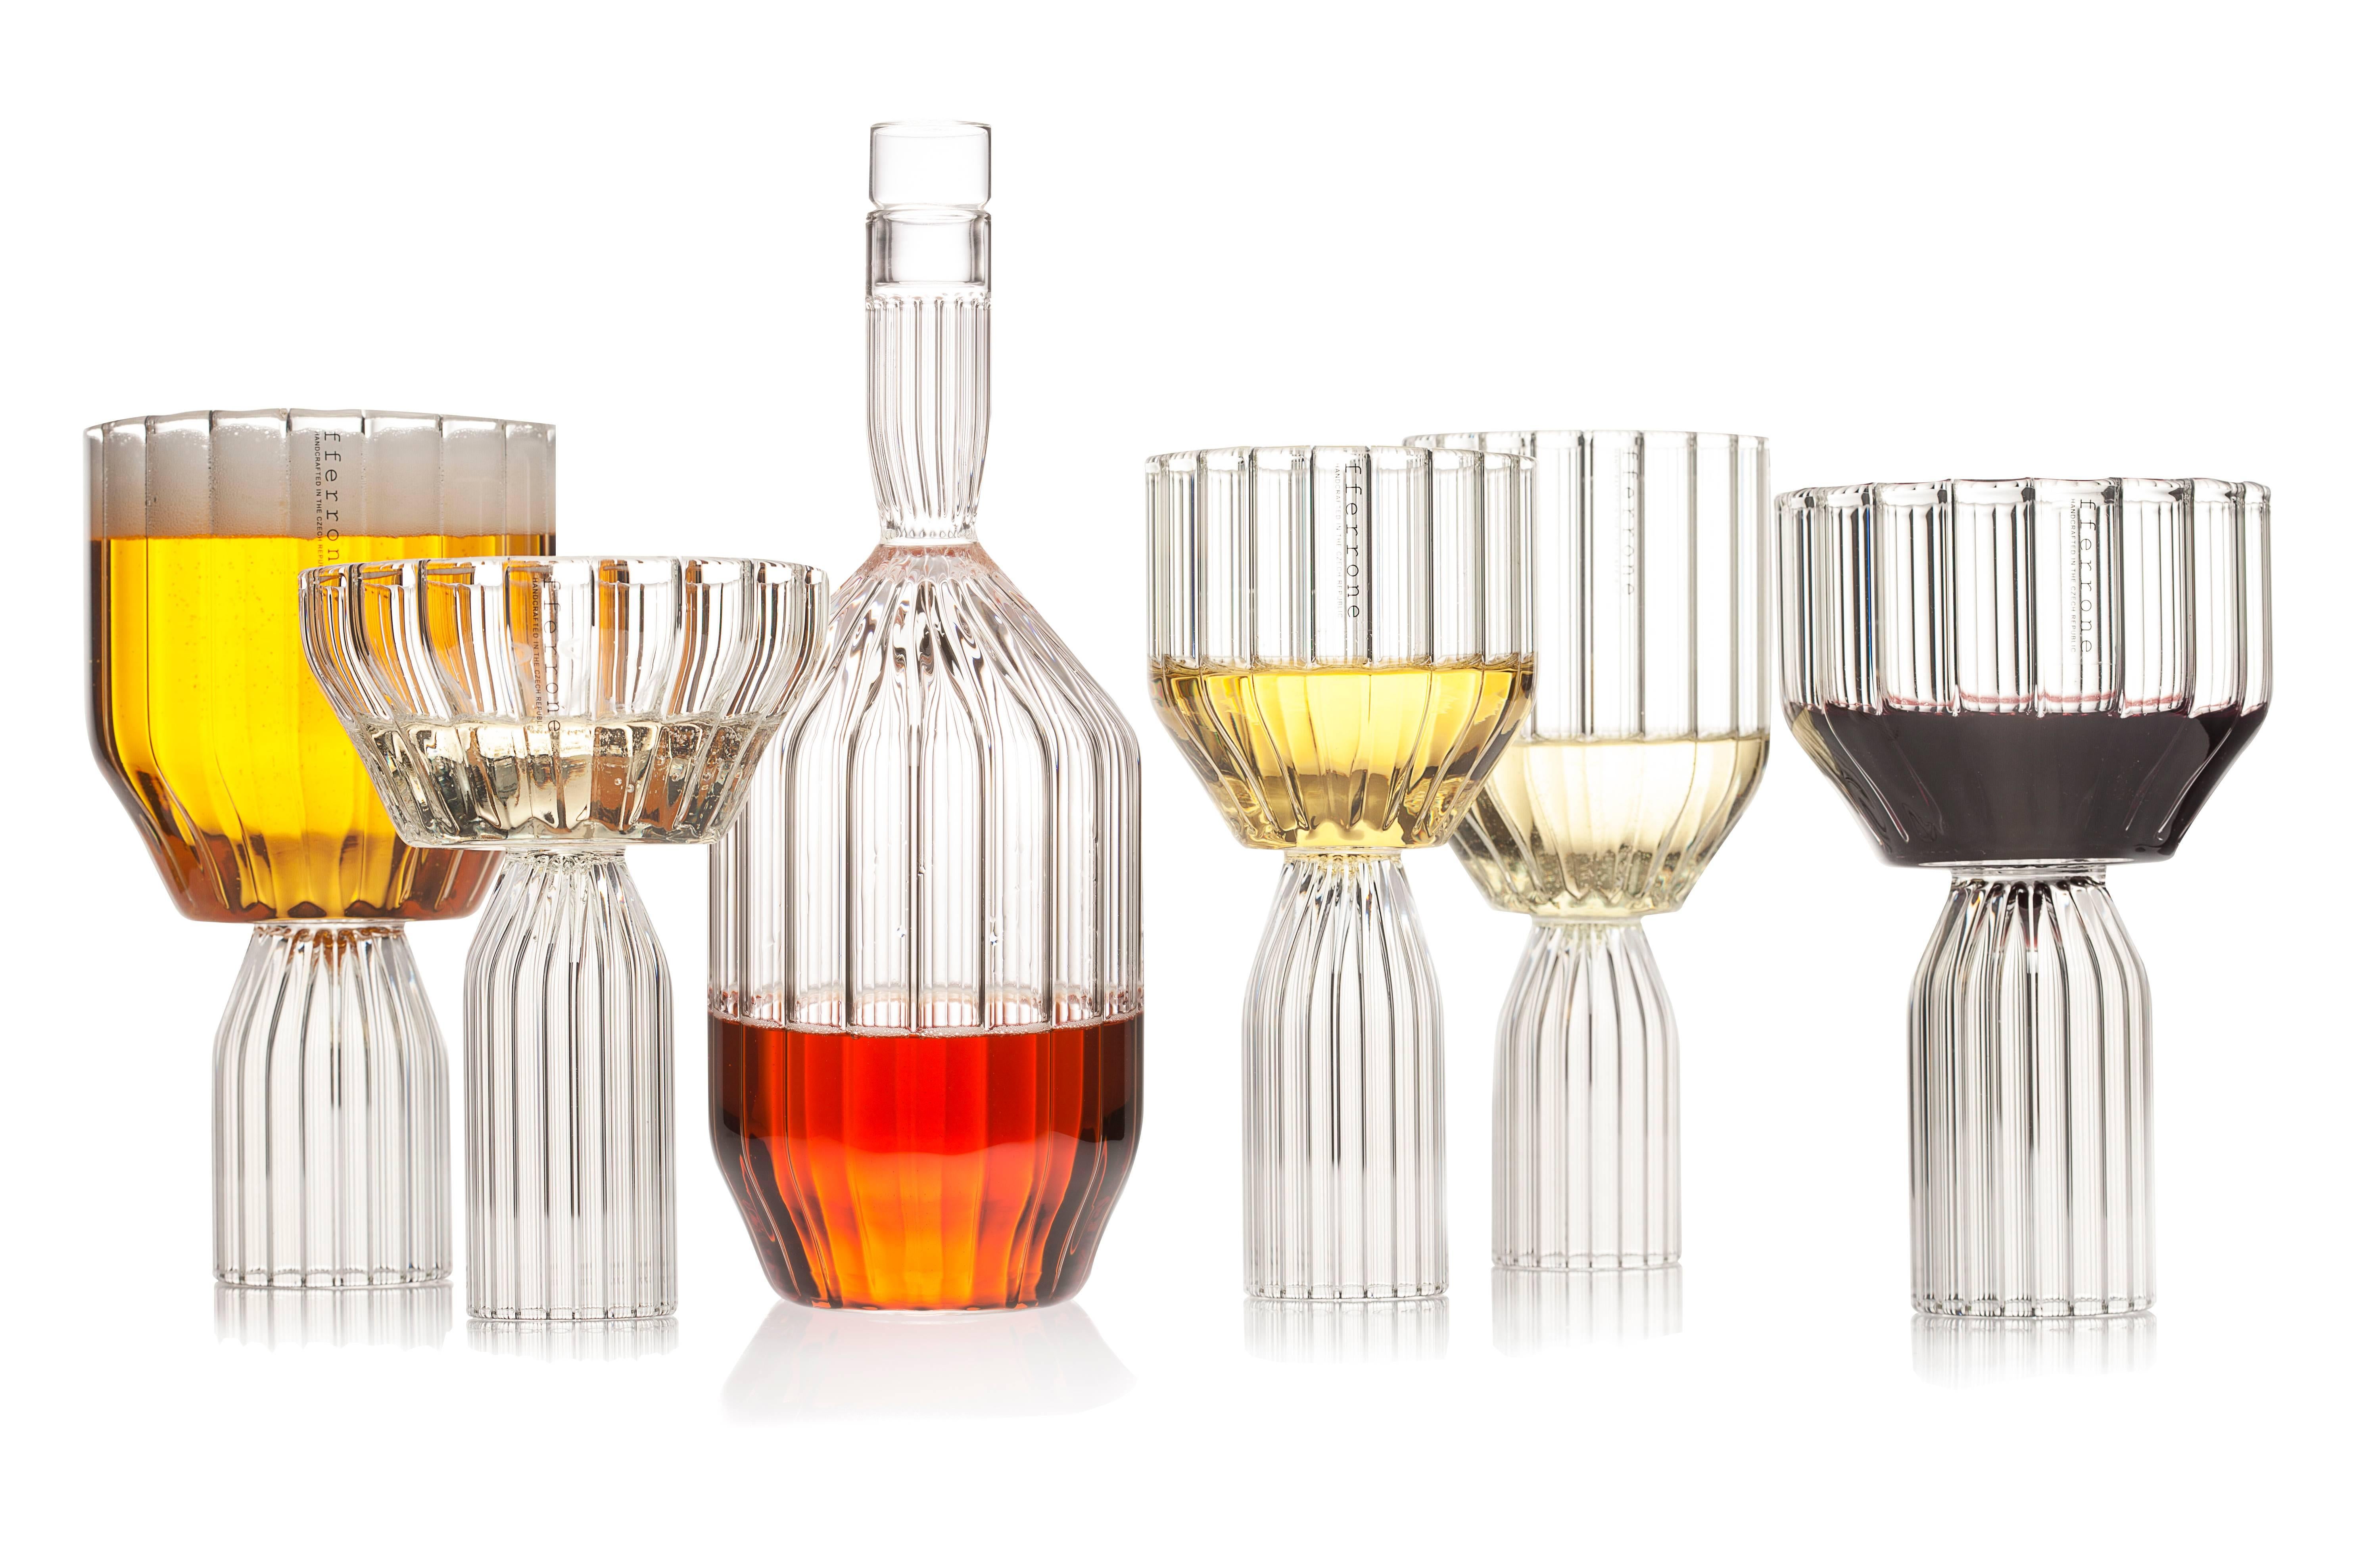 Ein Paar mittelgroße tschechische zeitgenössische Glas handgefertigt ist die perfekte große Kelch Wein oder Cocktail-Glas für Getränke. Hervorragend geeignet für alle Getränke oder Weißwein,

Die Kollektion Margot ist eine moderne Interpretation